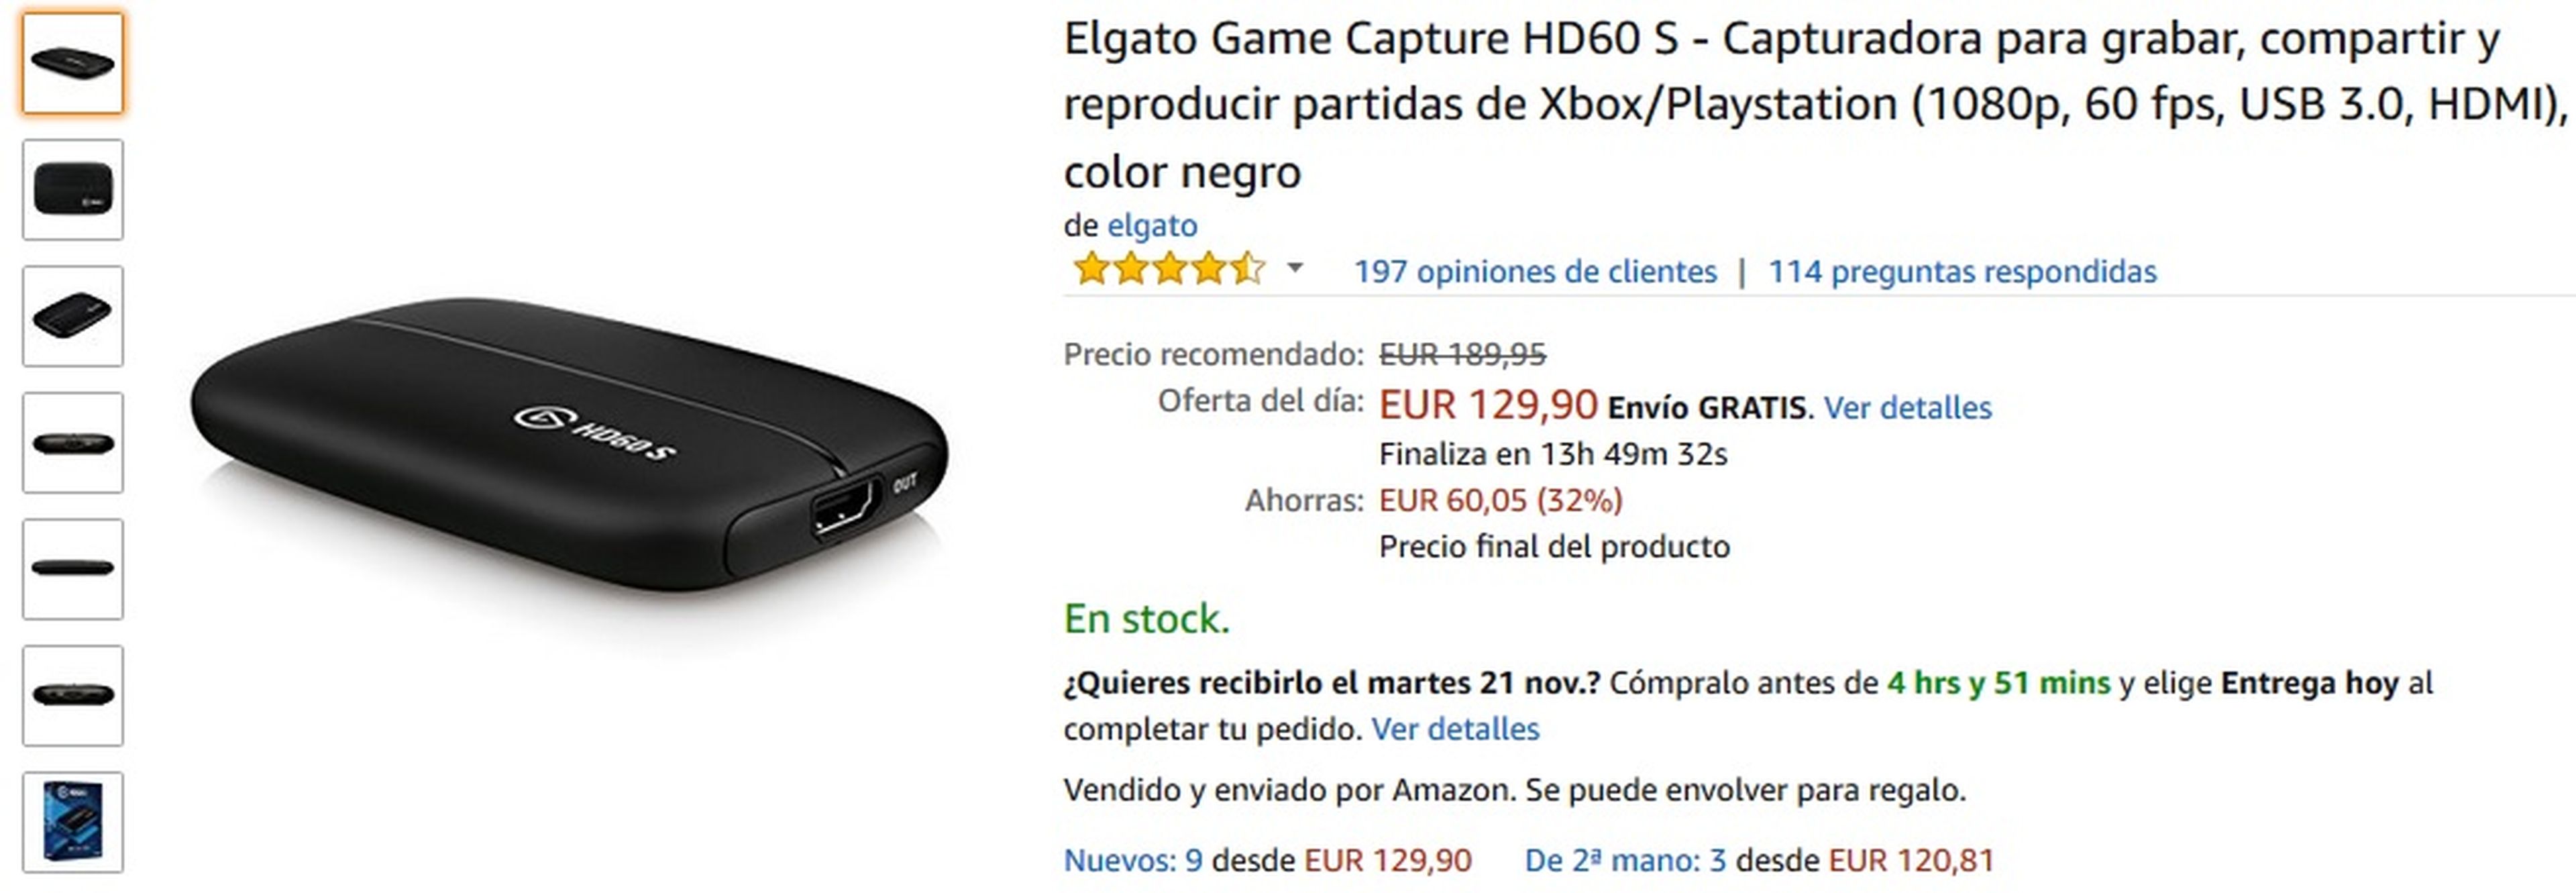 Capturadora Elgato en Amazon